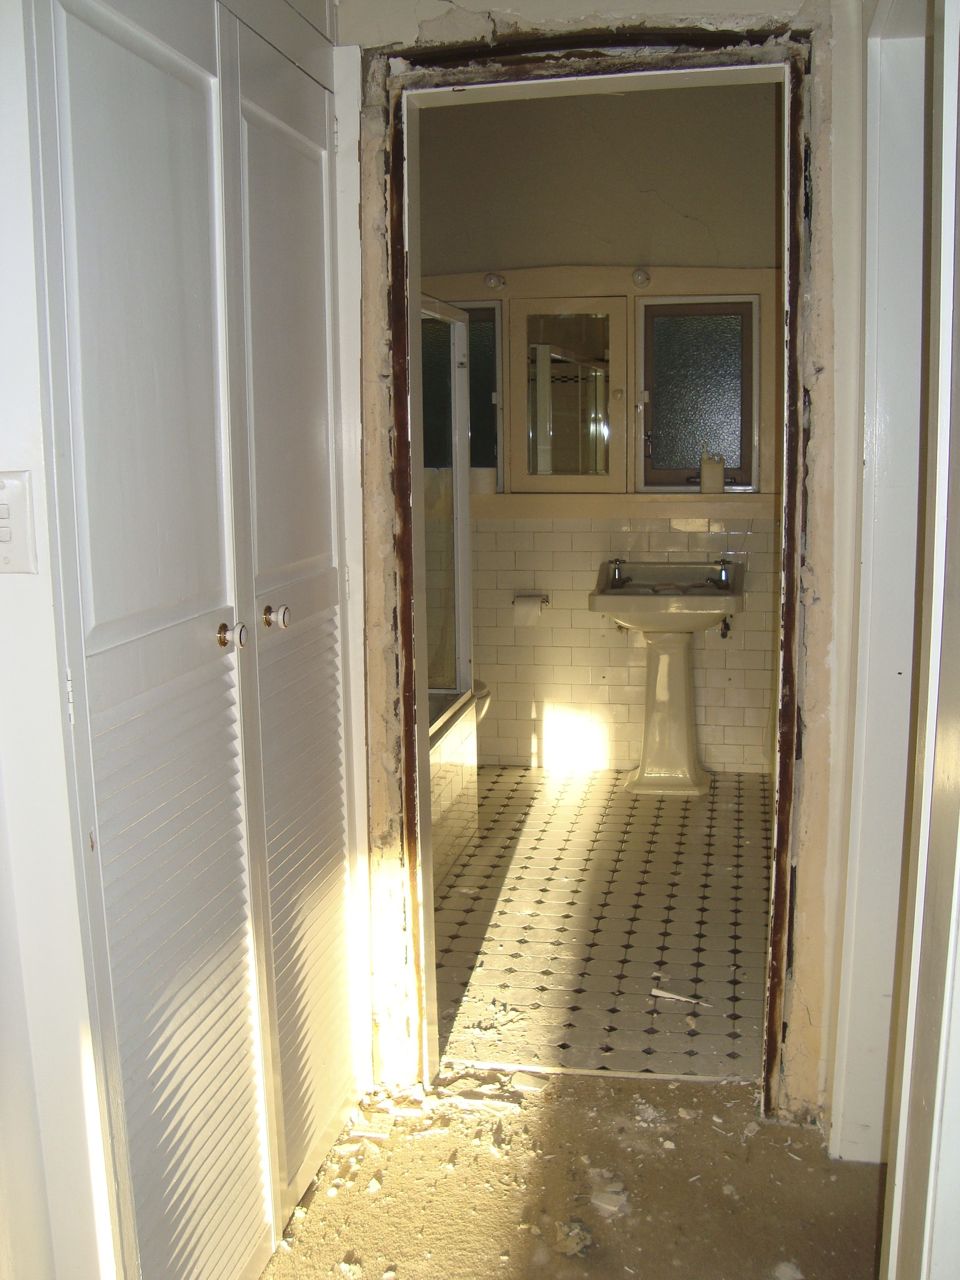 1 Original Bathroom